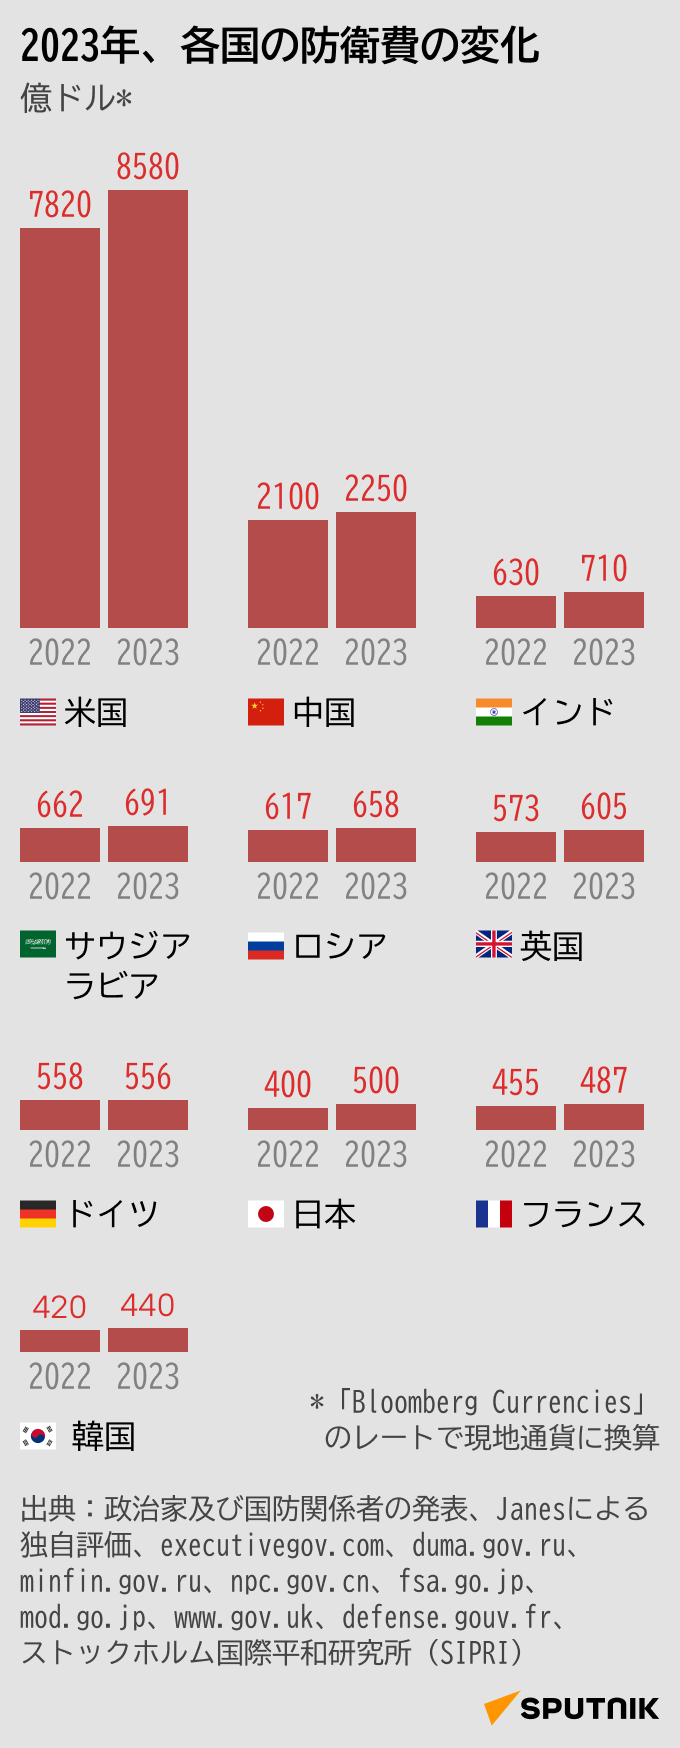 2023年、各国の防衛費の変化 - Sputnik 日本